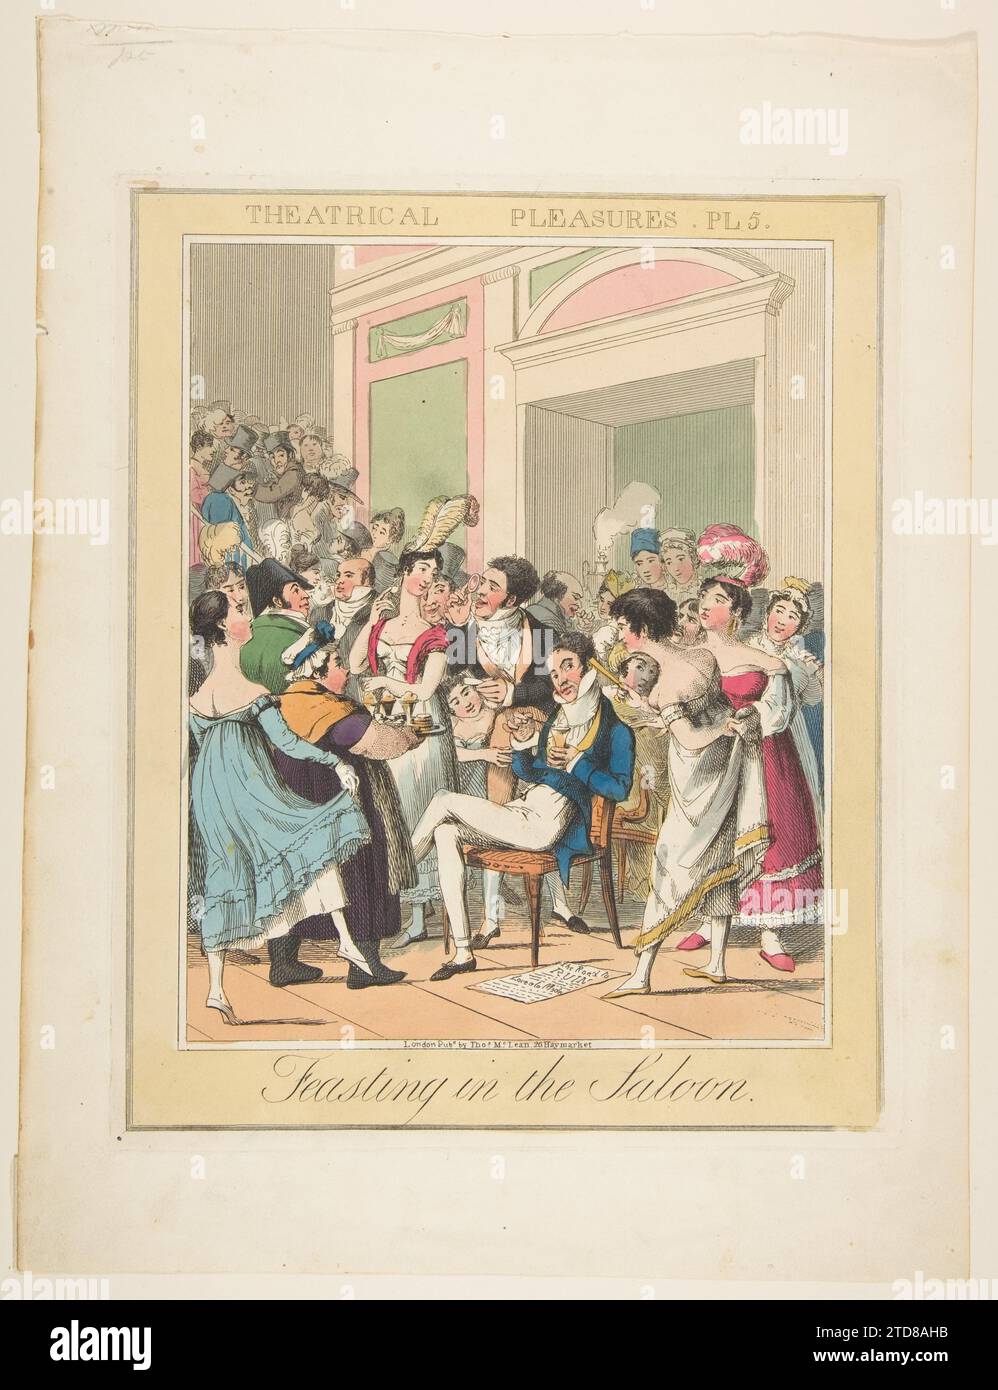 Theatervergnügen, Platte 5: Feasting in the Saloon 1917 von Theodore Lane Stockfoto